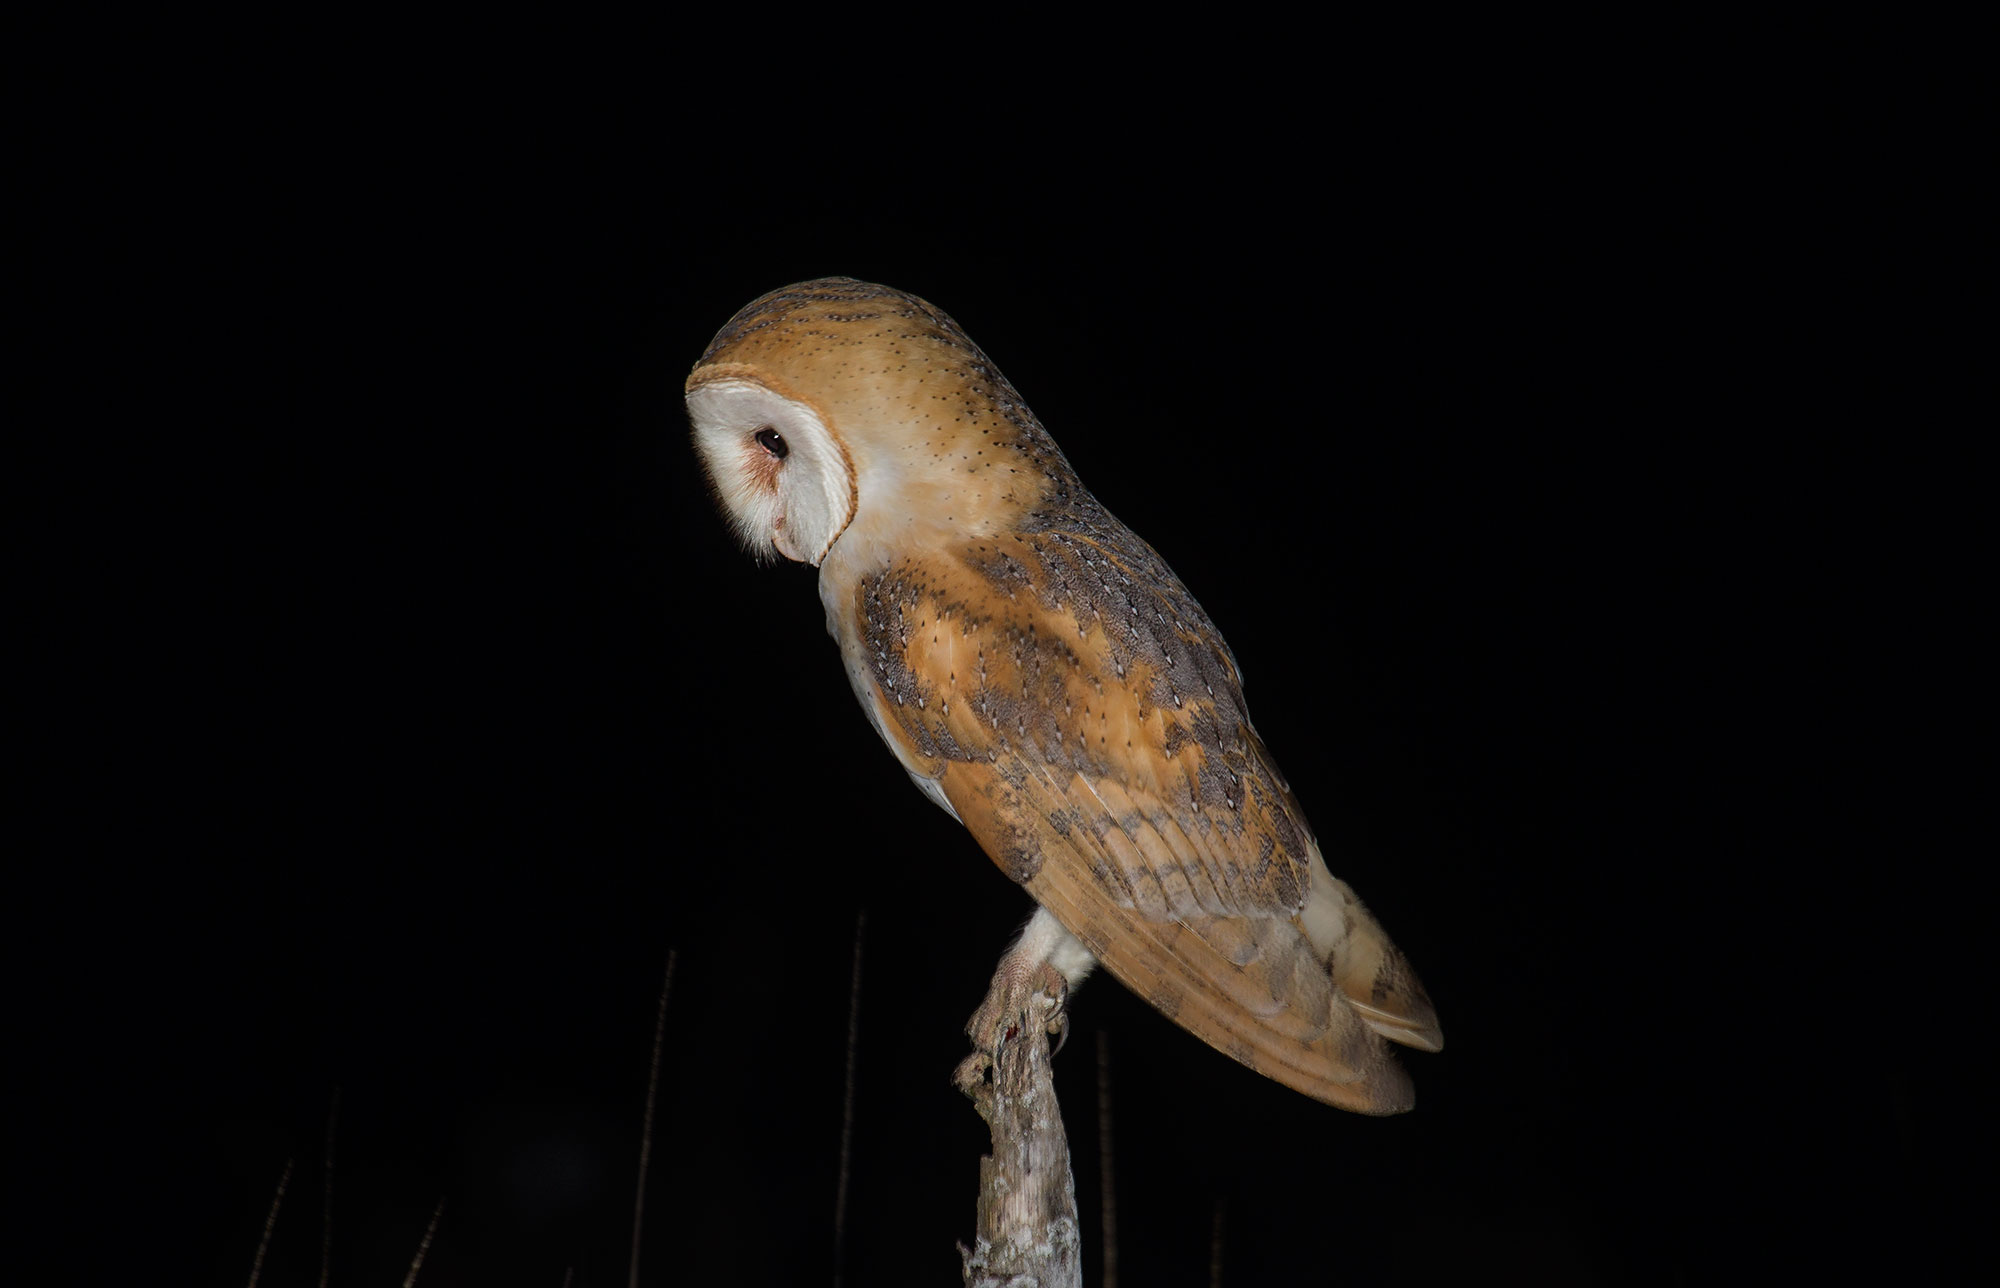 Barn Owl in profile...